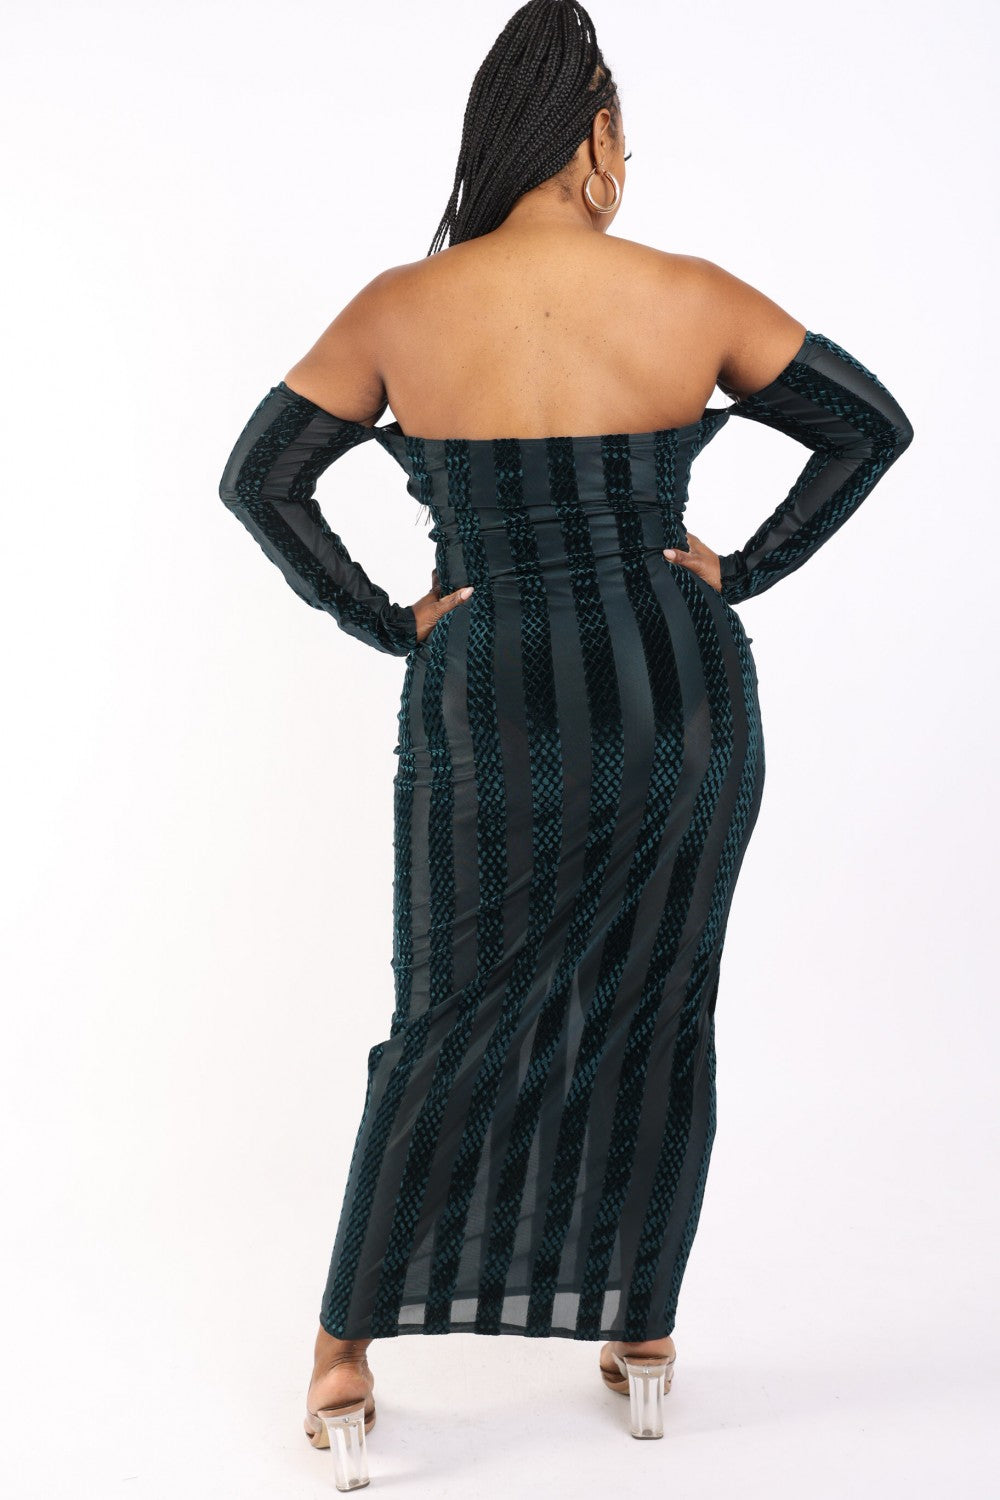 Striped Velvet Off Shoulder Dress - Tigbul's Fashion